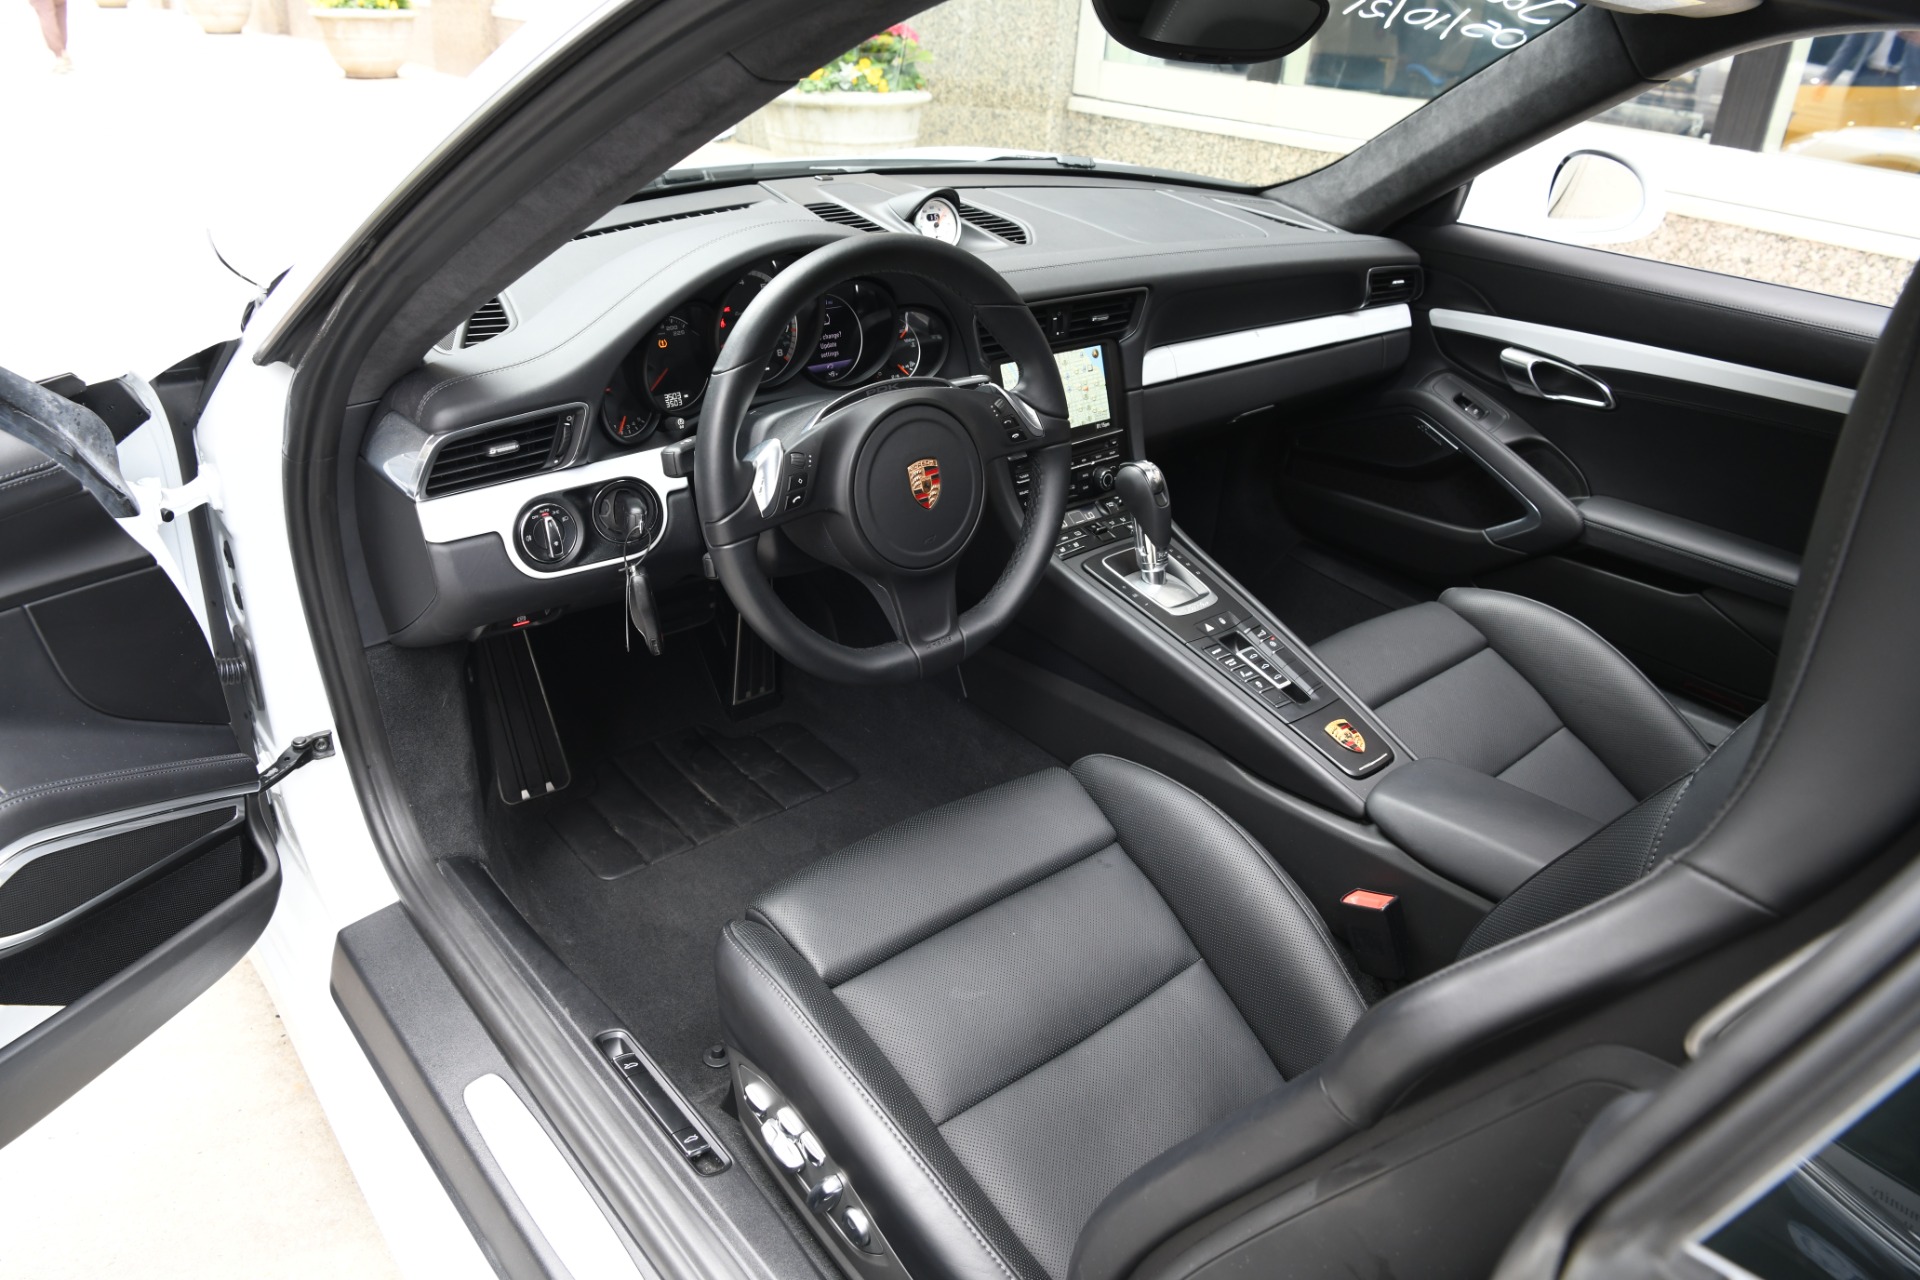 Used 2015 Porsche 911 Turbo S | Chicago, IL